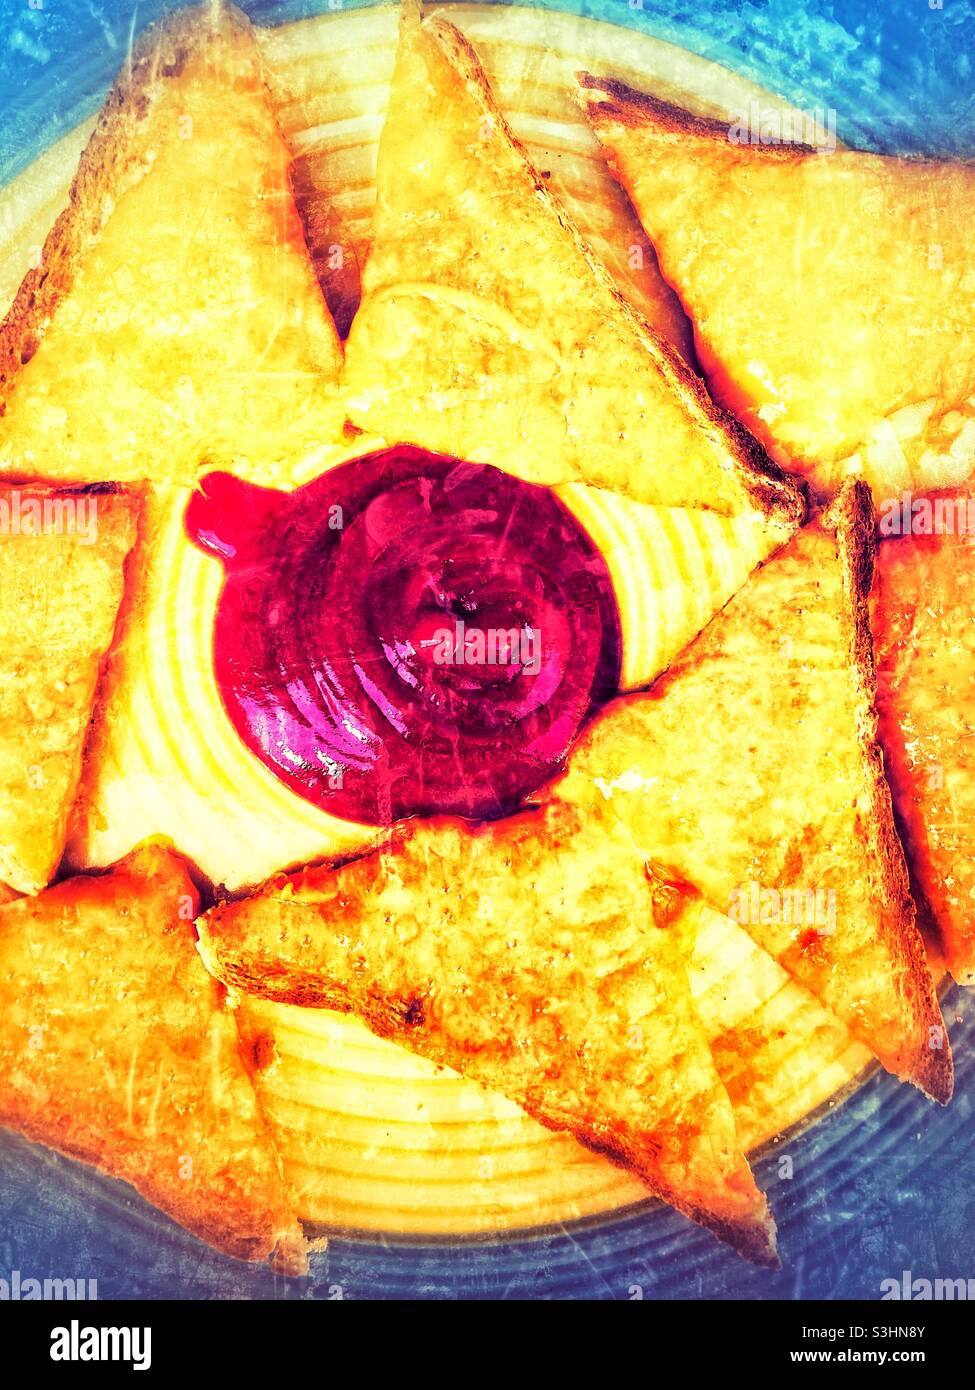 Formaggio su toast con ketchup al pomodoro, filtro grunge applicato Foto Stock